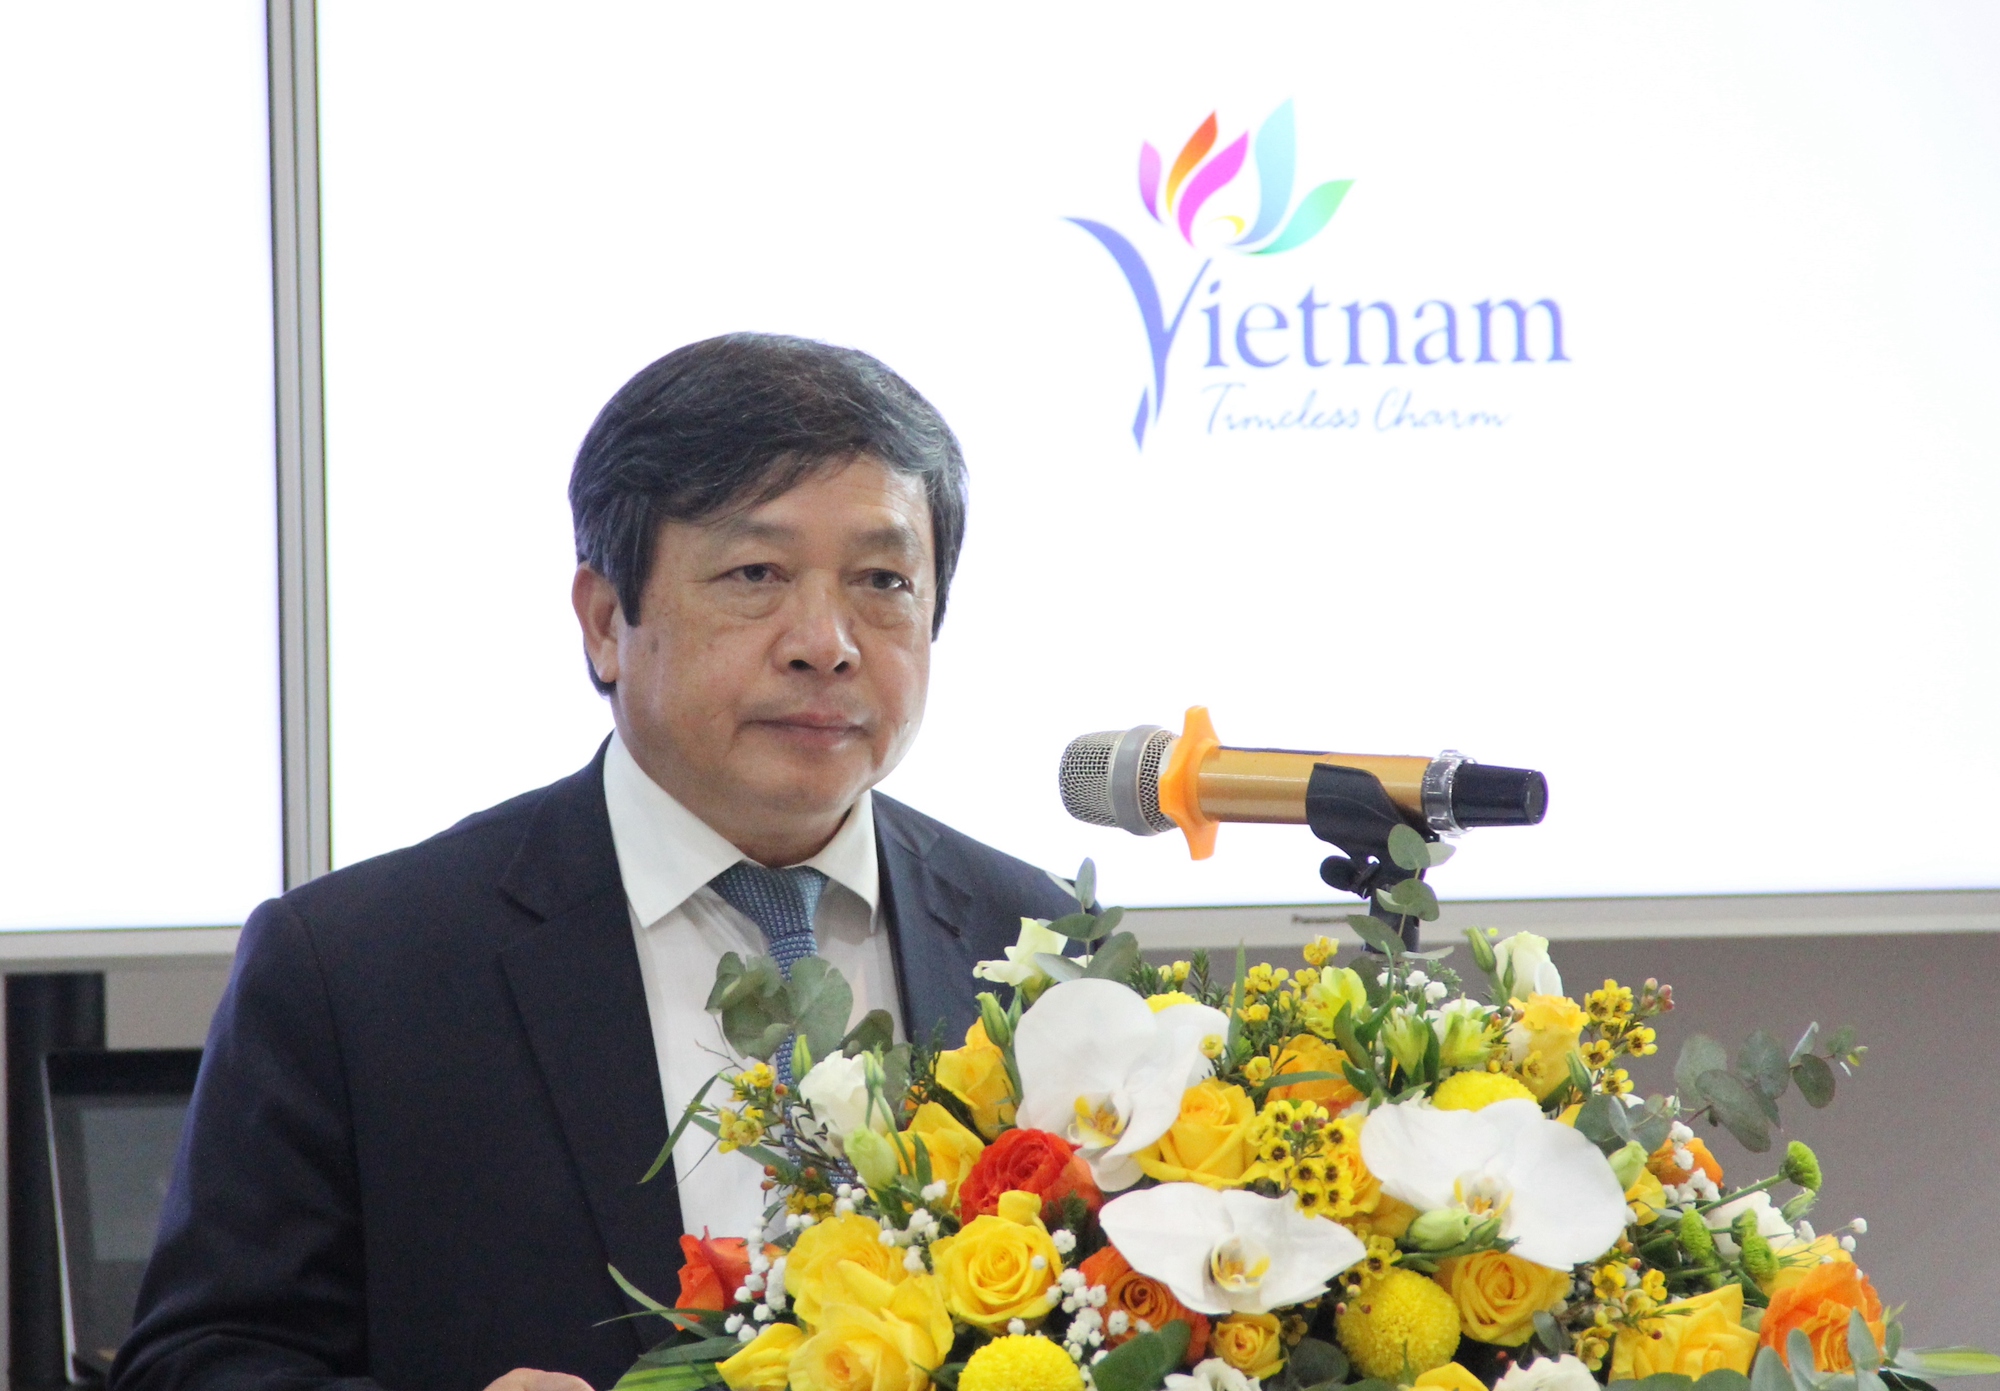 Đẩy mạnh hợp tác du lịch giữa Việt Nam - Hàn Quốc thông qua thanh toán điện tử - Ảnh 1.